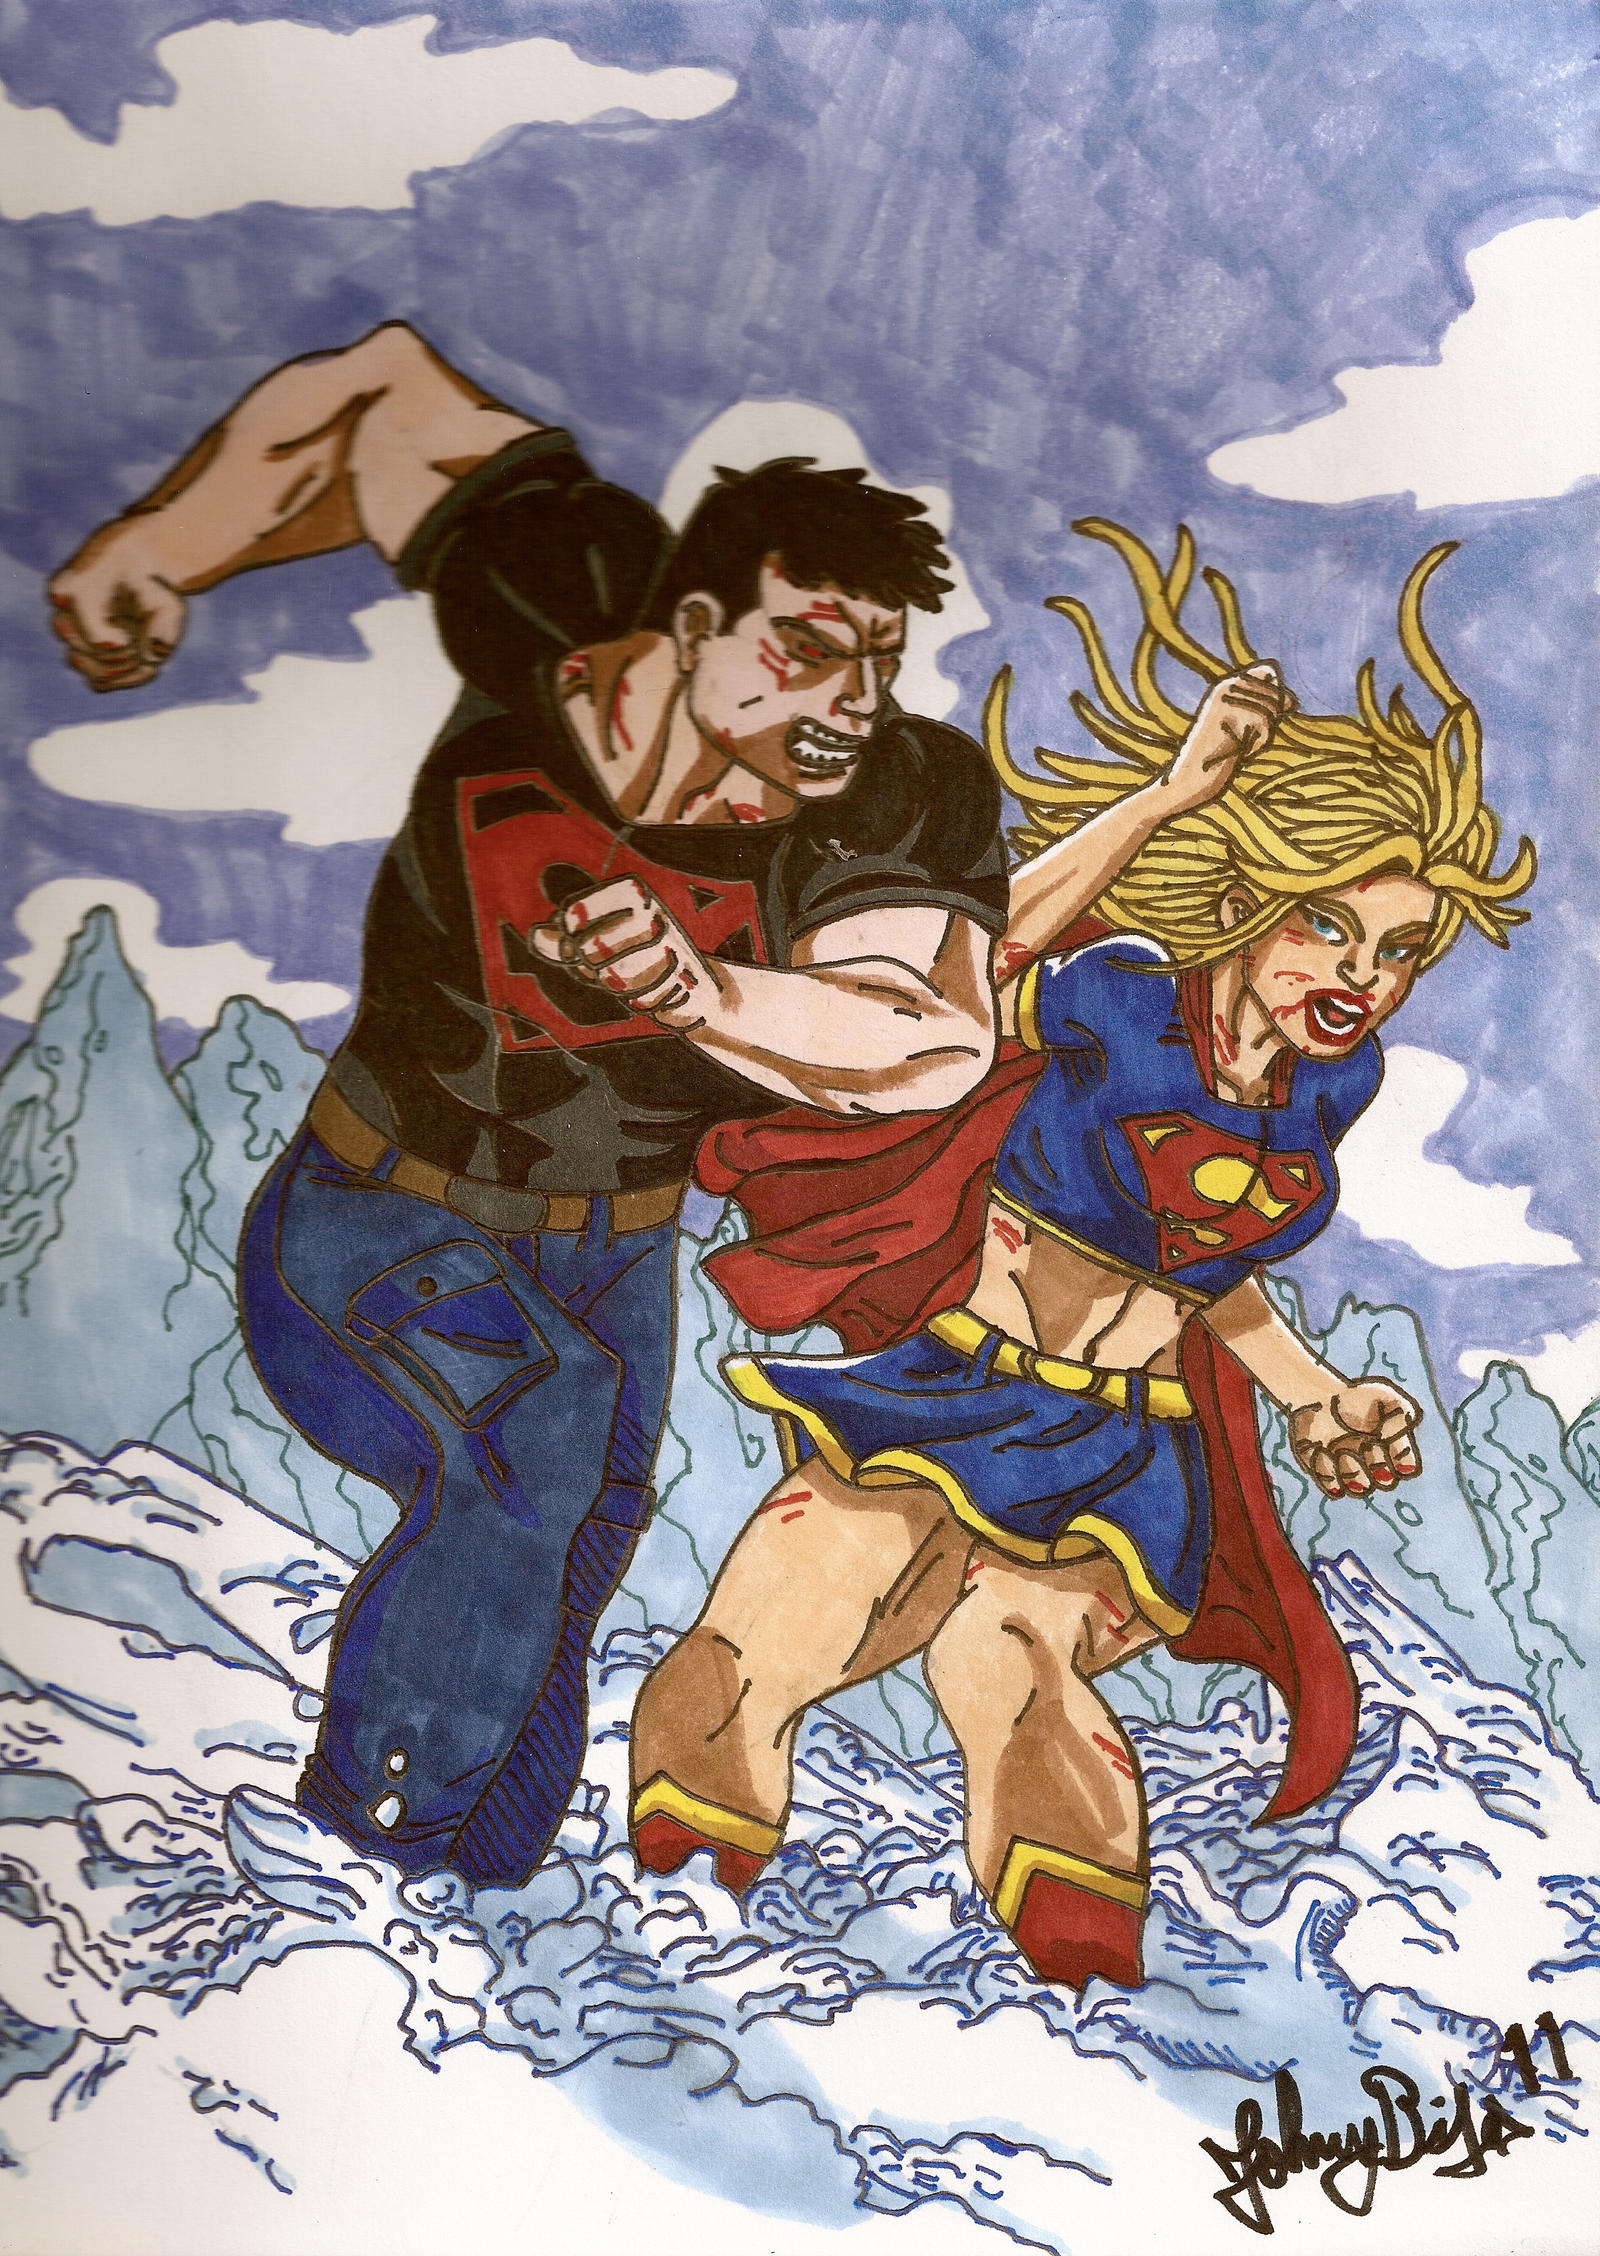 Superboy vs Supergirl